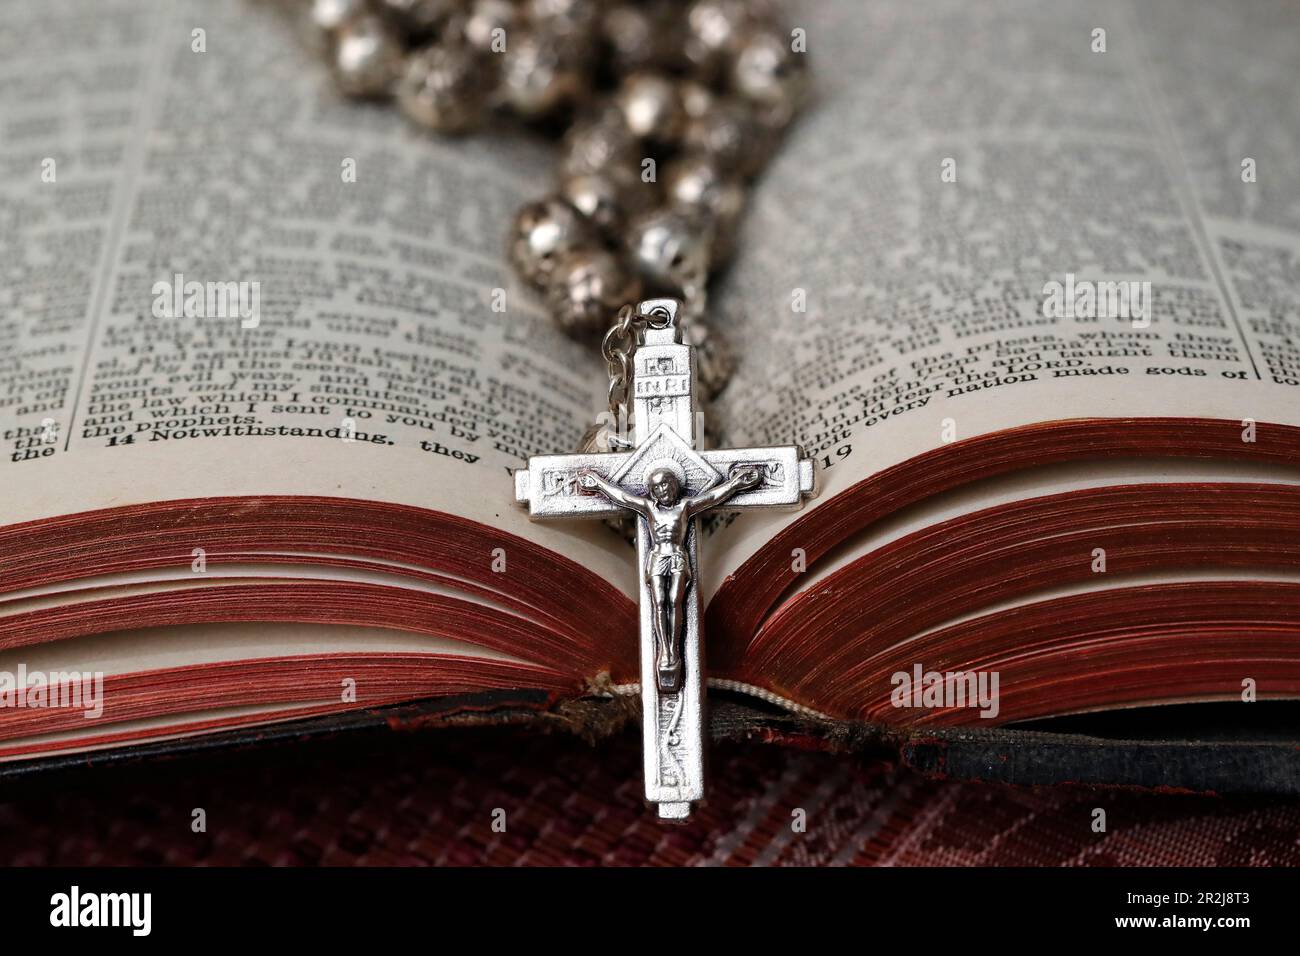 Rosaire vintage avec crucifix sur une Bible ouverte, symbole religieux chrétien, France, Europe Banque D'Images